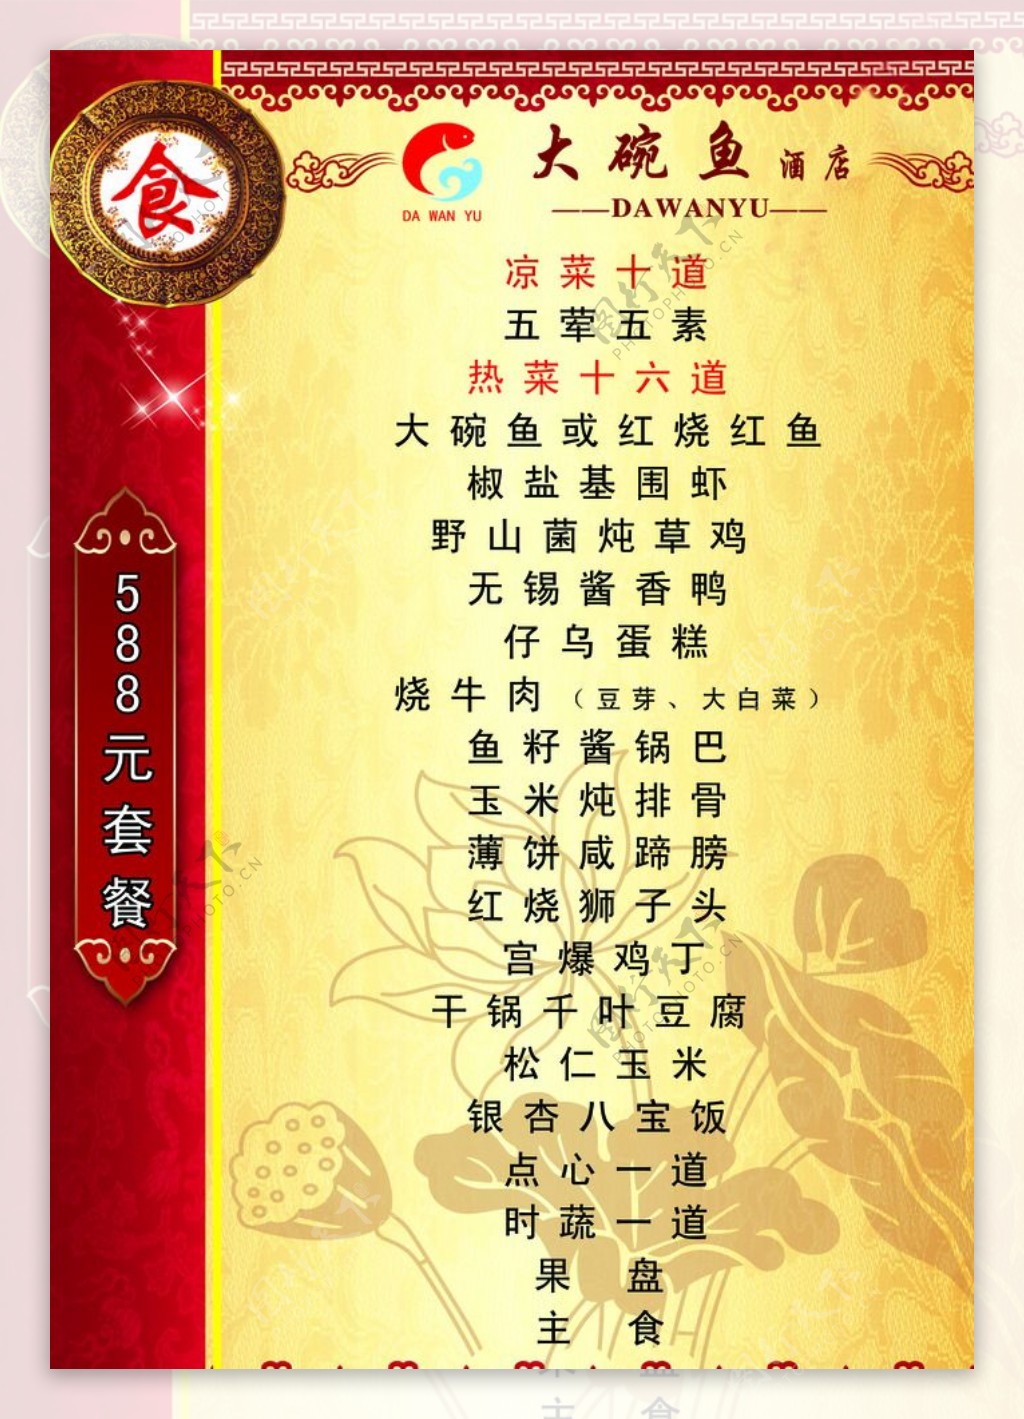 中国风古典菜单